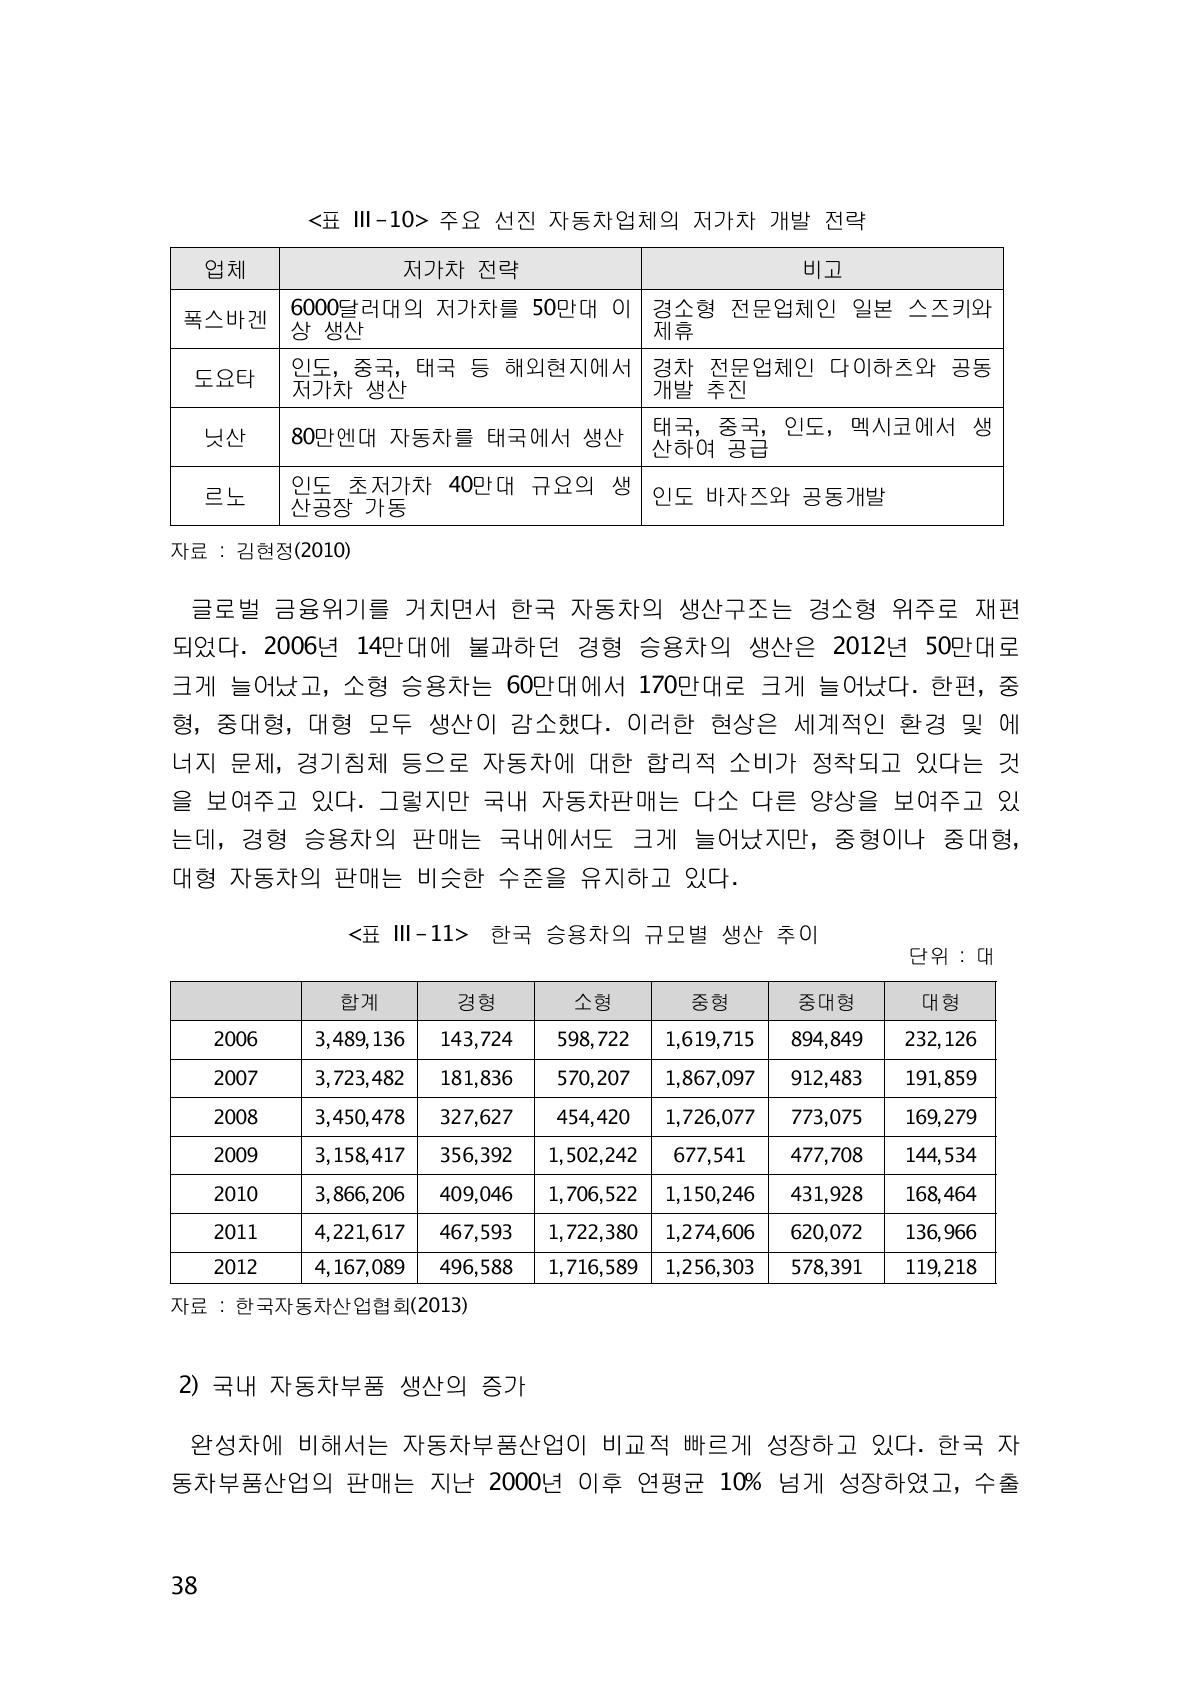 한국 승용차의 규모별 생산 추이